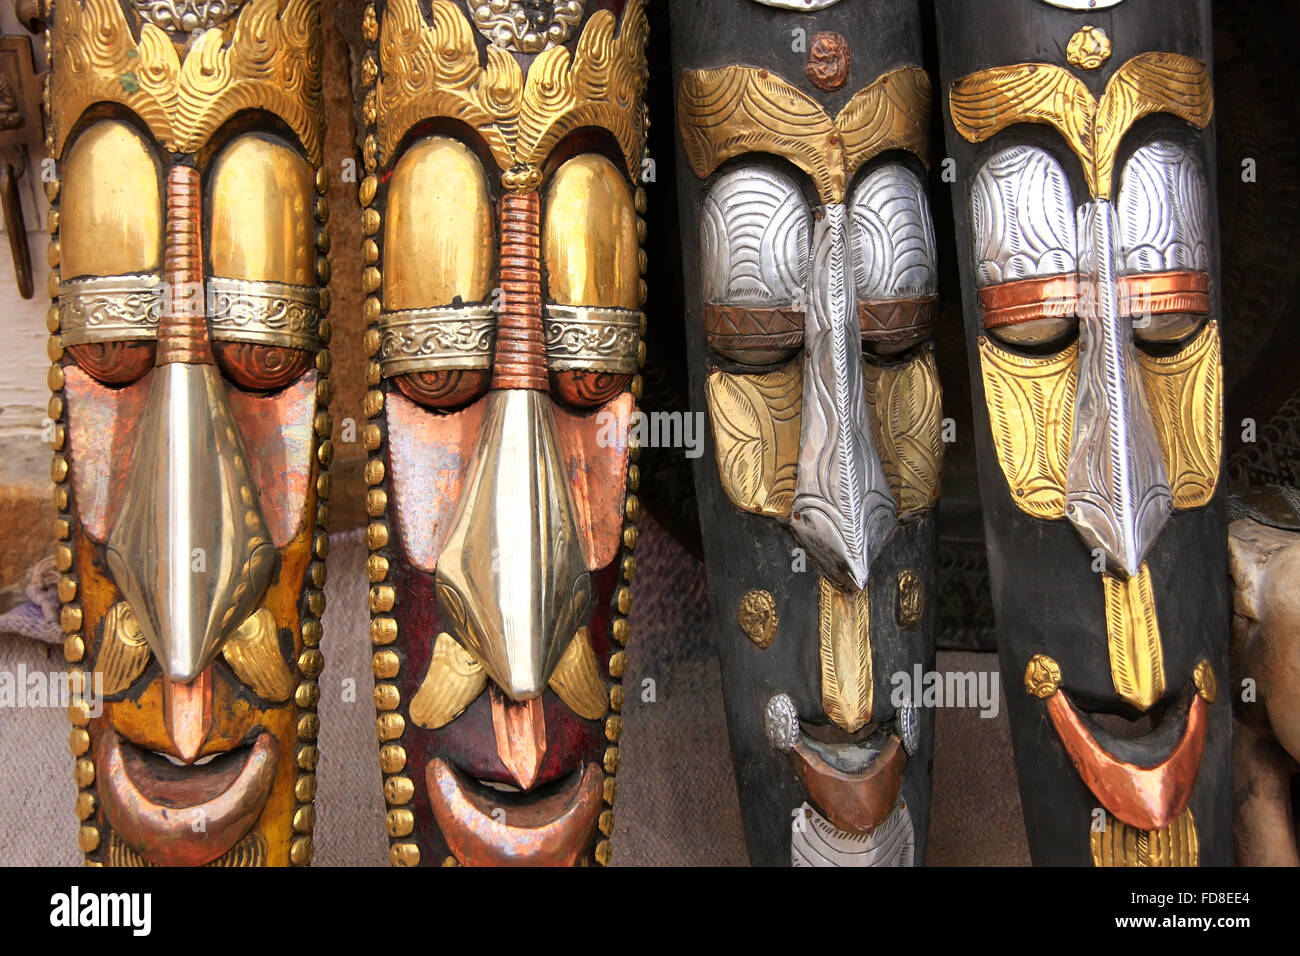 Visualizzazione delle maschere presso un negozio di souvenir in Jaisalmer fort, Rajasthan, India Foto Stock